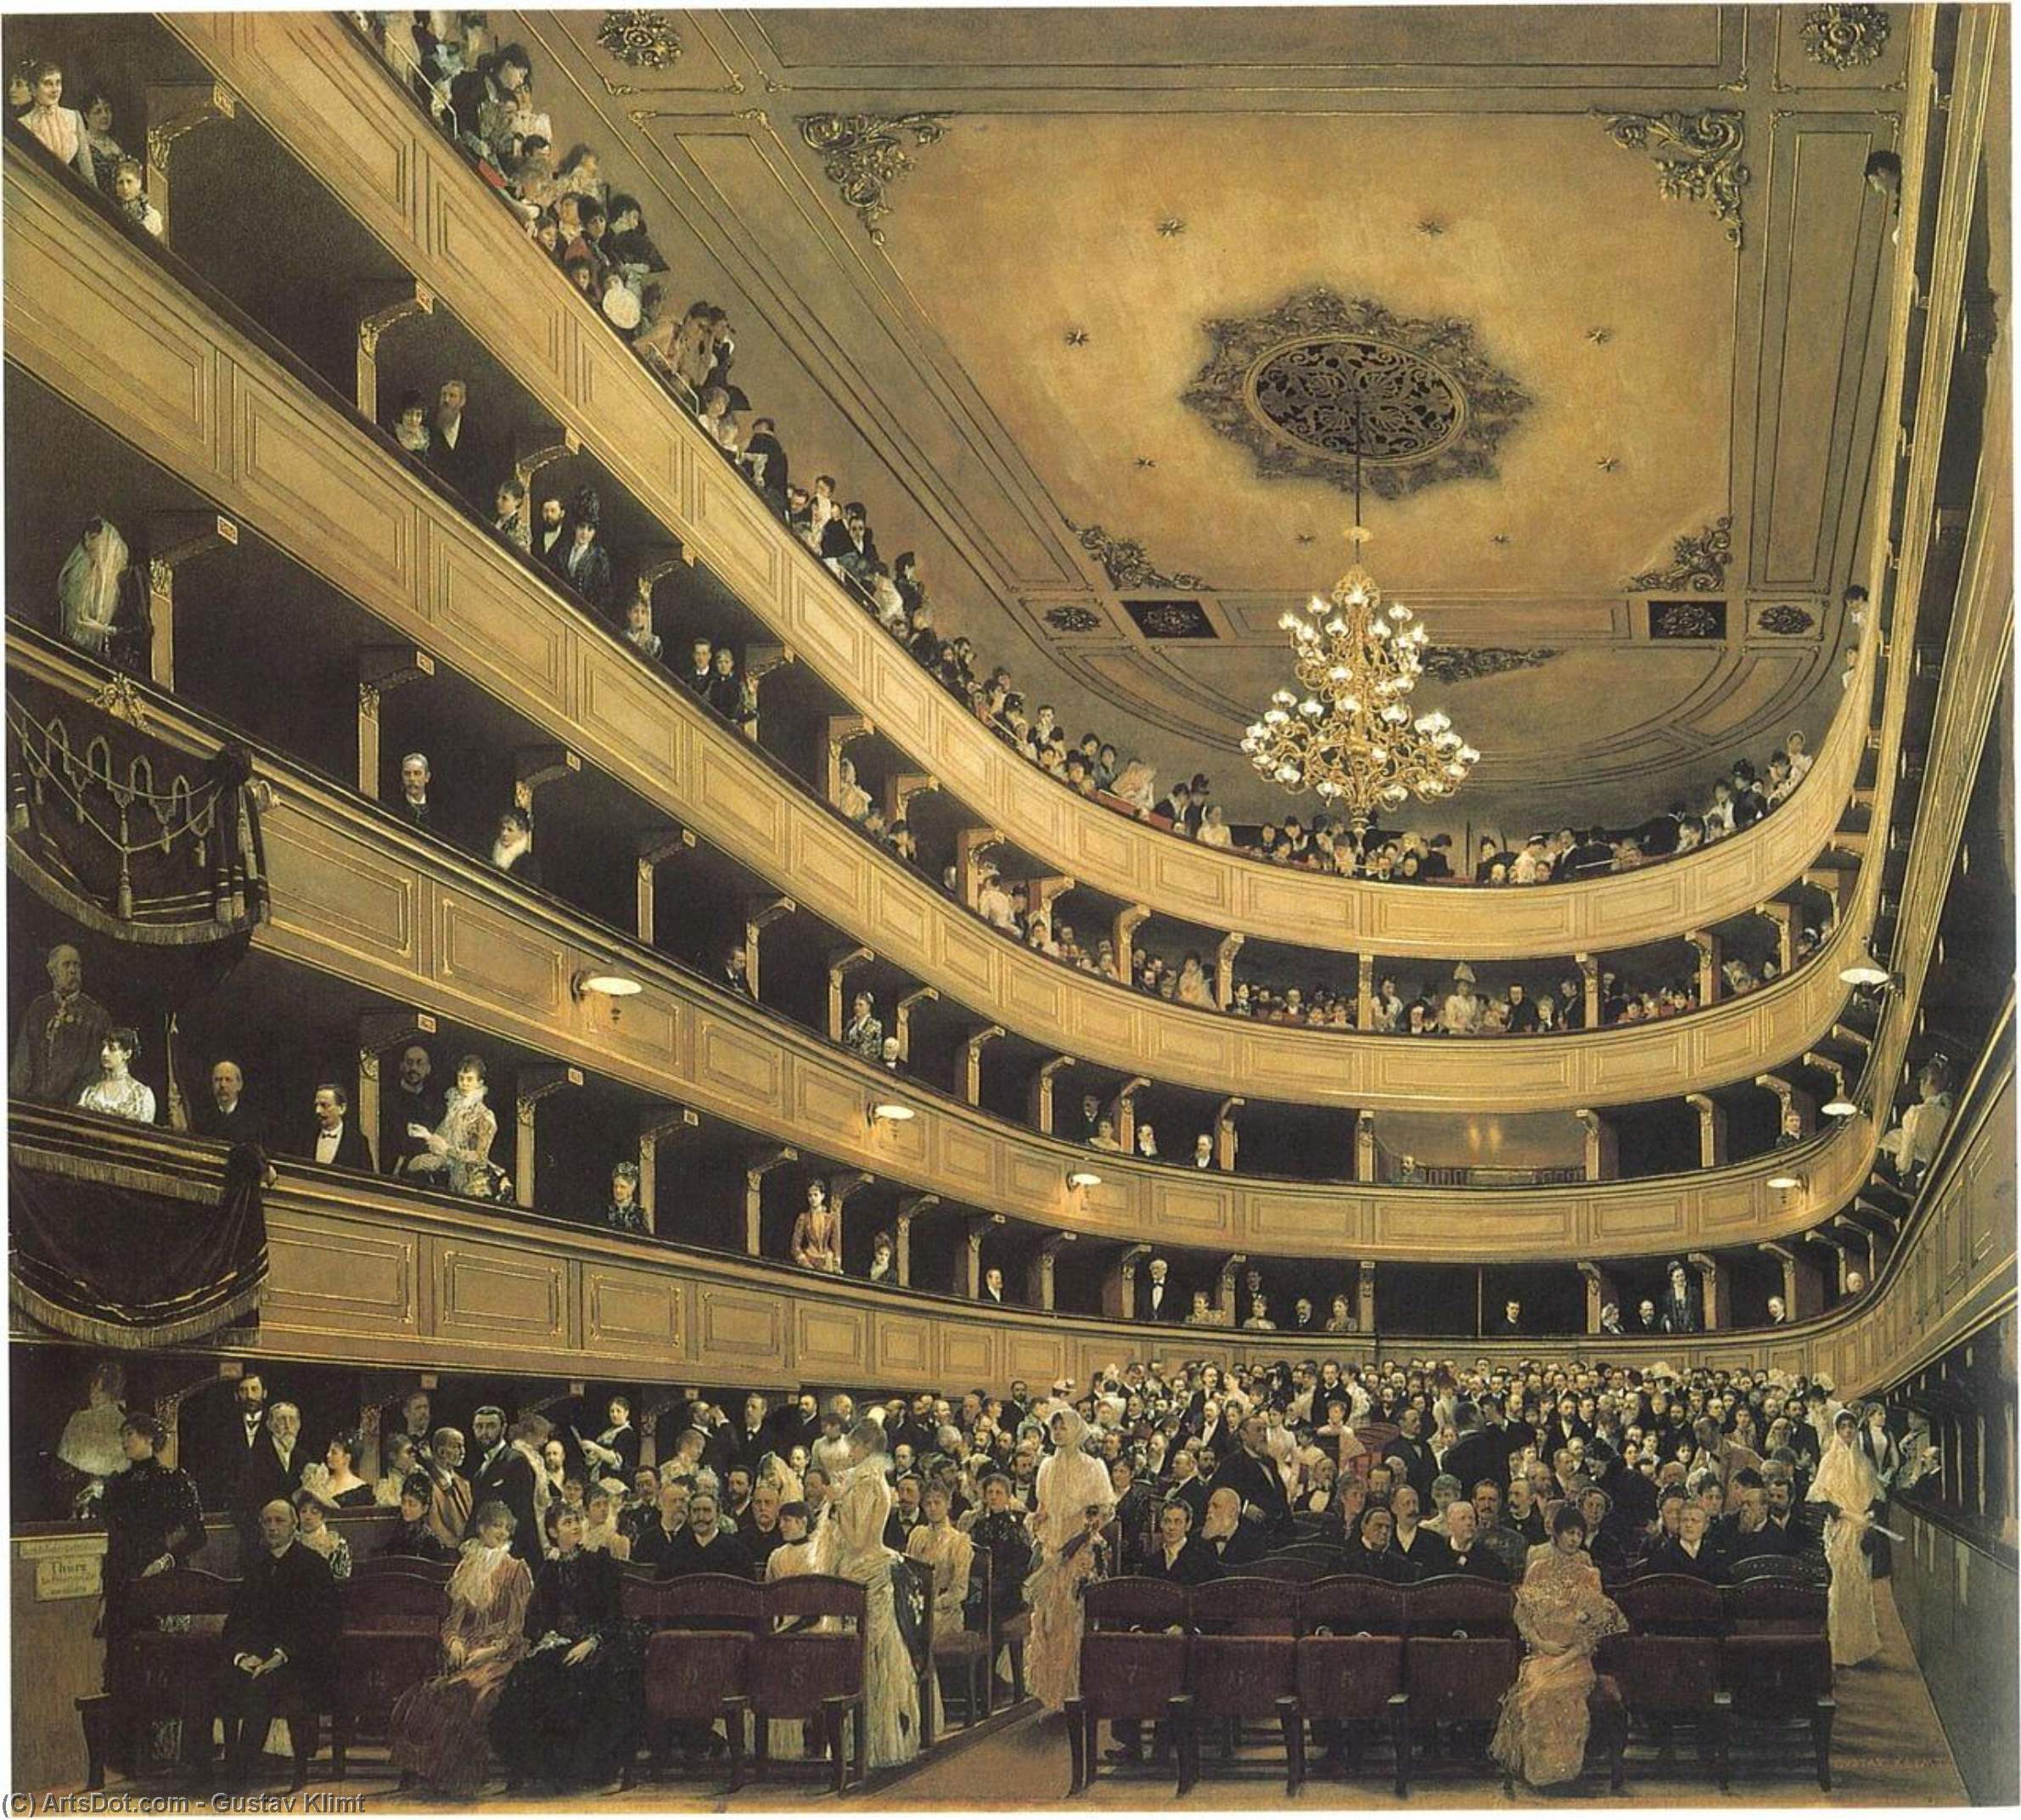 WikiOO.org - Encyclopedia of Fine Arts - Maľba, Artwork Gustav Klimt - Auditoriumin the Old Burgtheater, Vienna